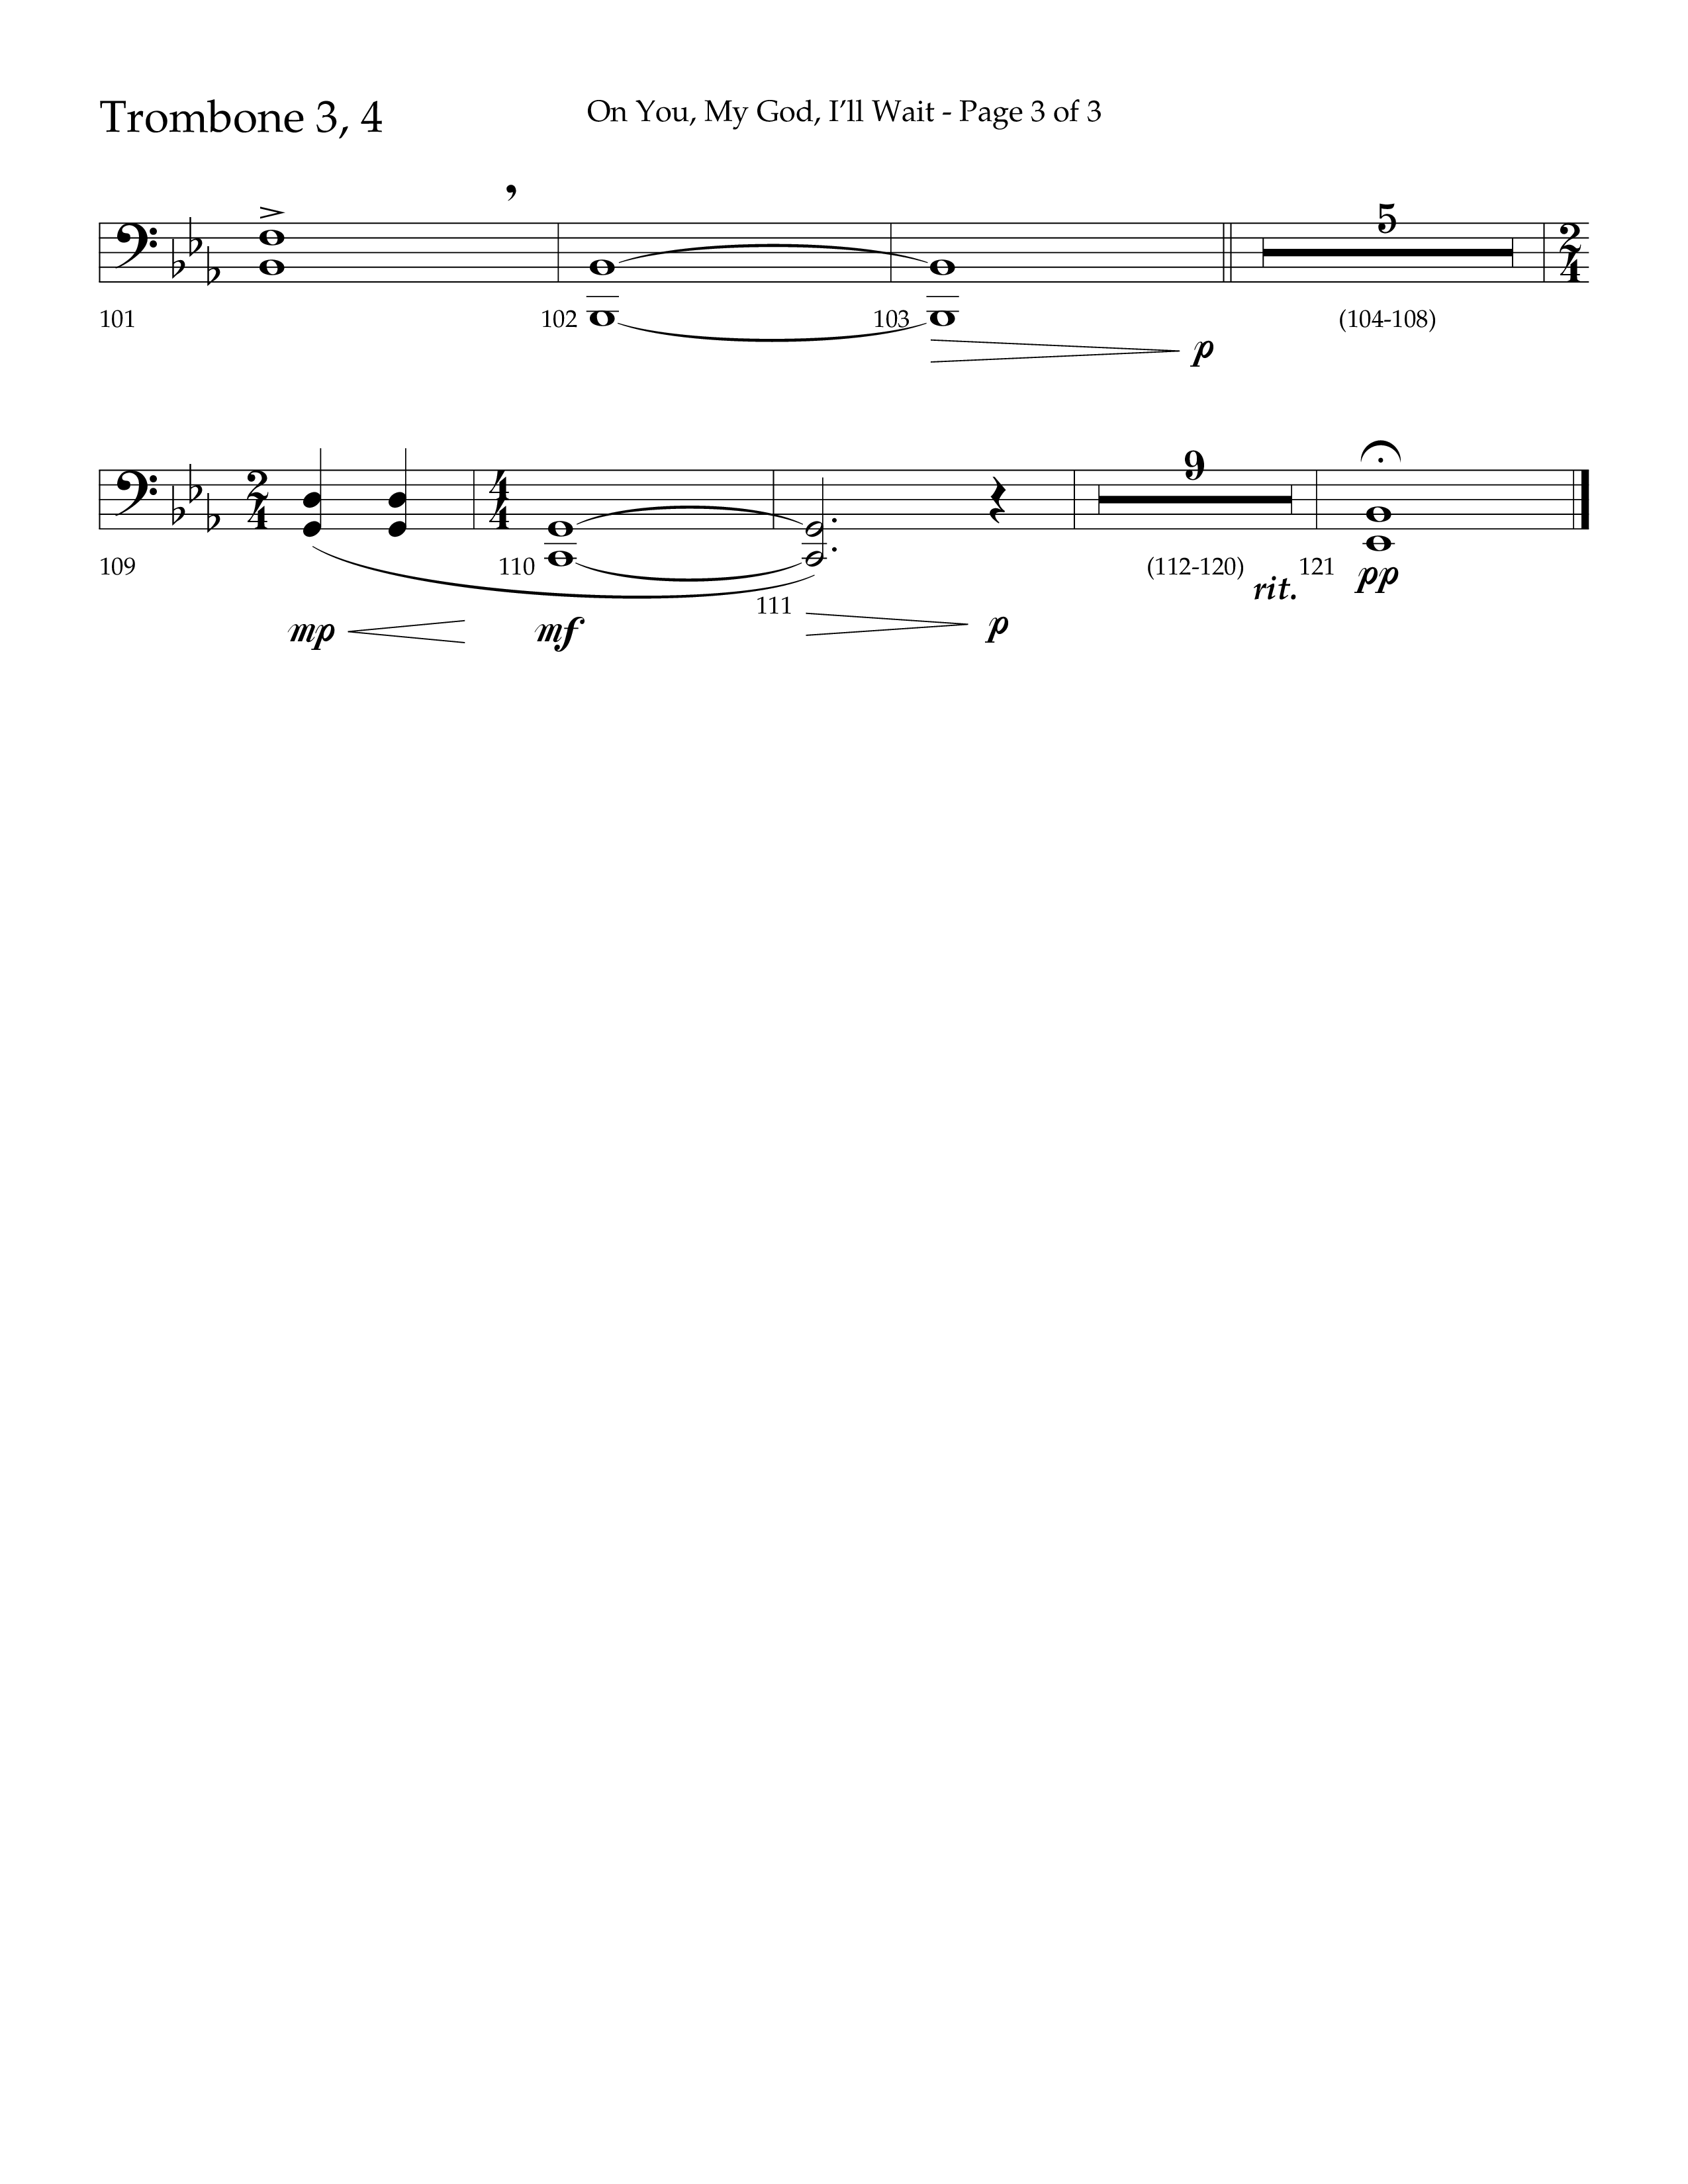 On You My God I'll Wait (Choral Anthem SATB) Trombone 3/4 (Lifeway Choral / Arr. Craig Adams / Arr. Mike Harland)